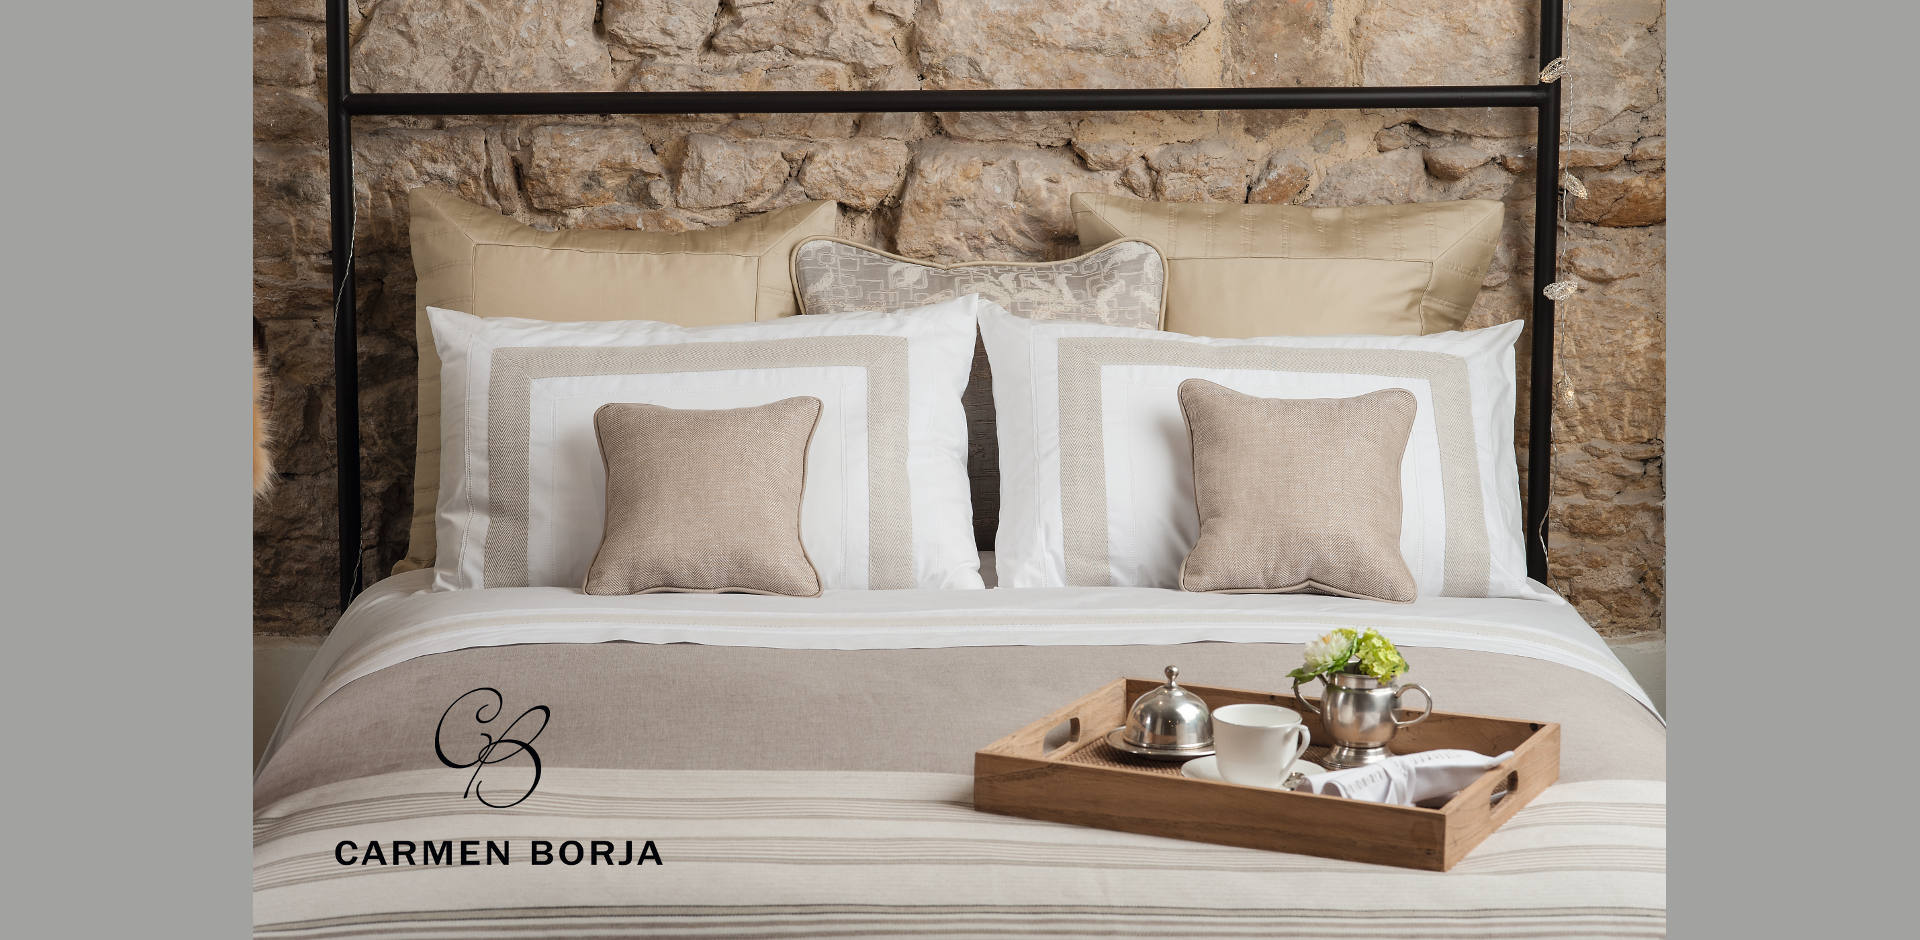 Tienda de ropa de cama, mesa y baño - Carmen Borja sitio Oficial